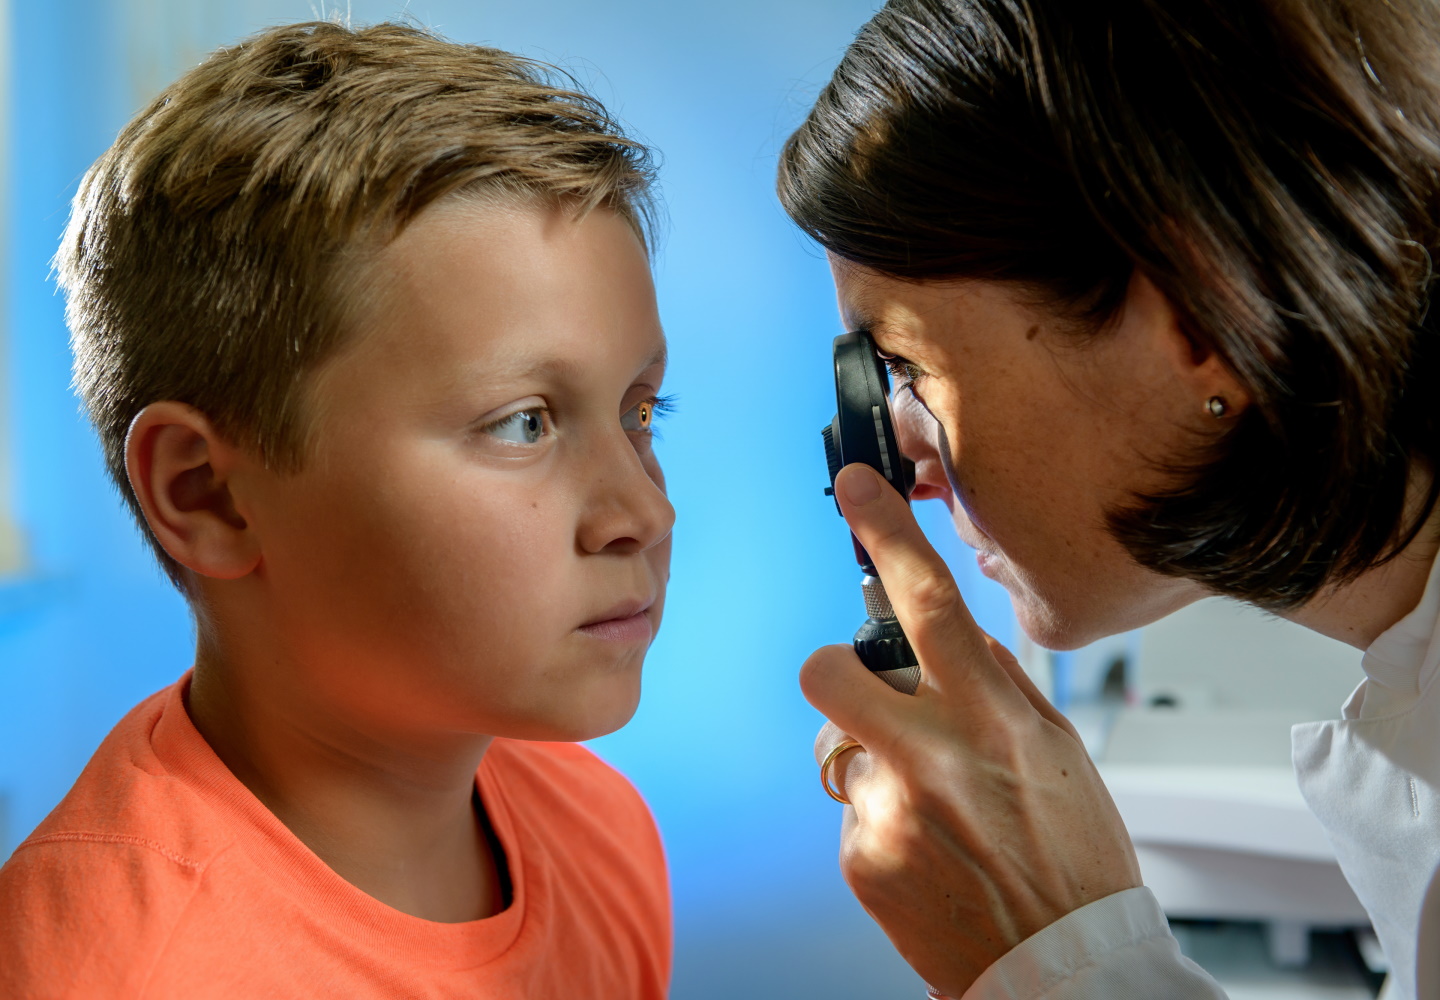 Junge mit blonden kurzen Haaren und orangenem Shirt wird an seinem Auge von Ärztin mit Lupe untersucht